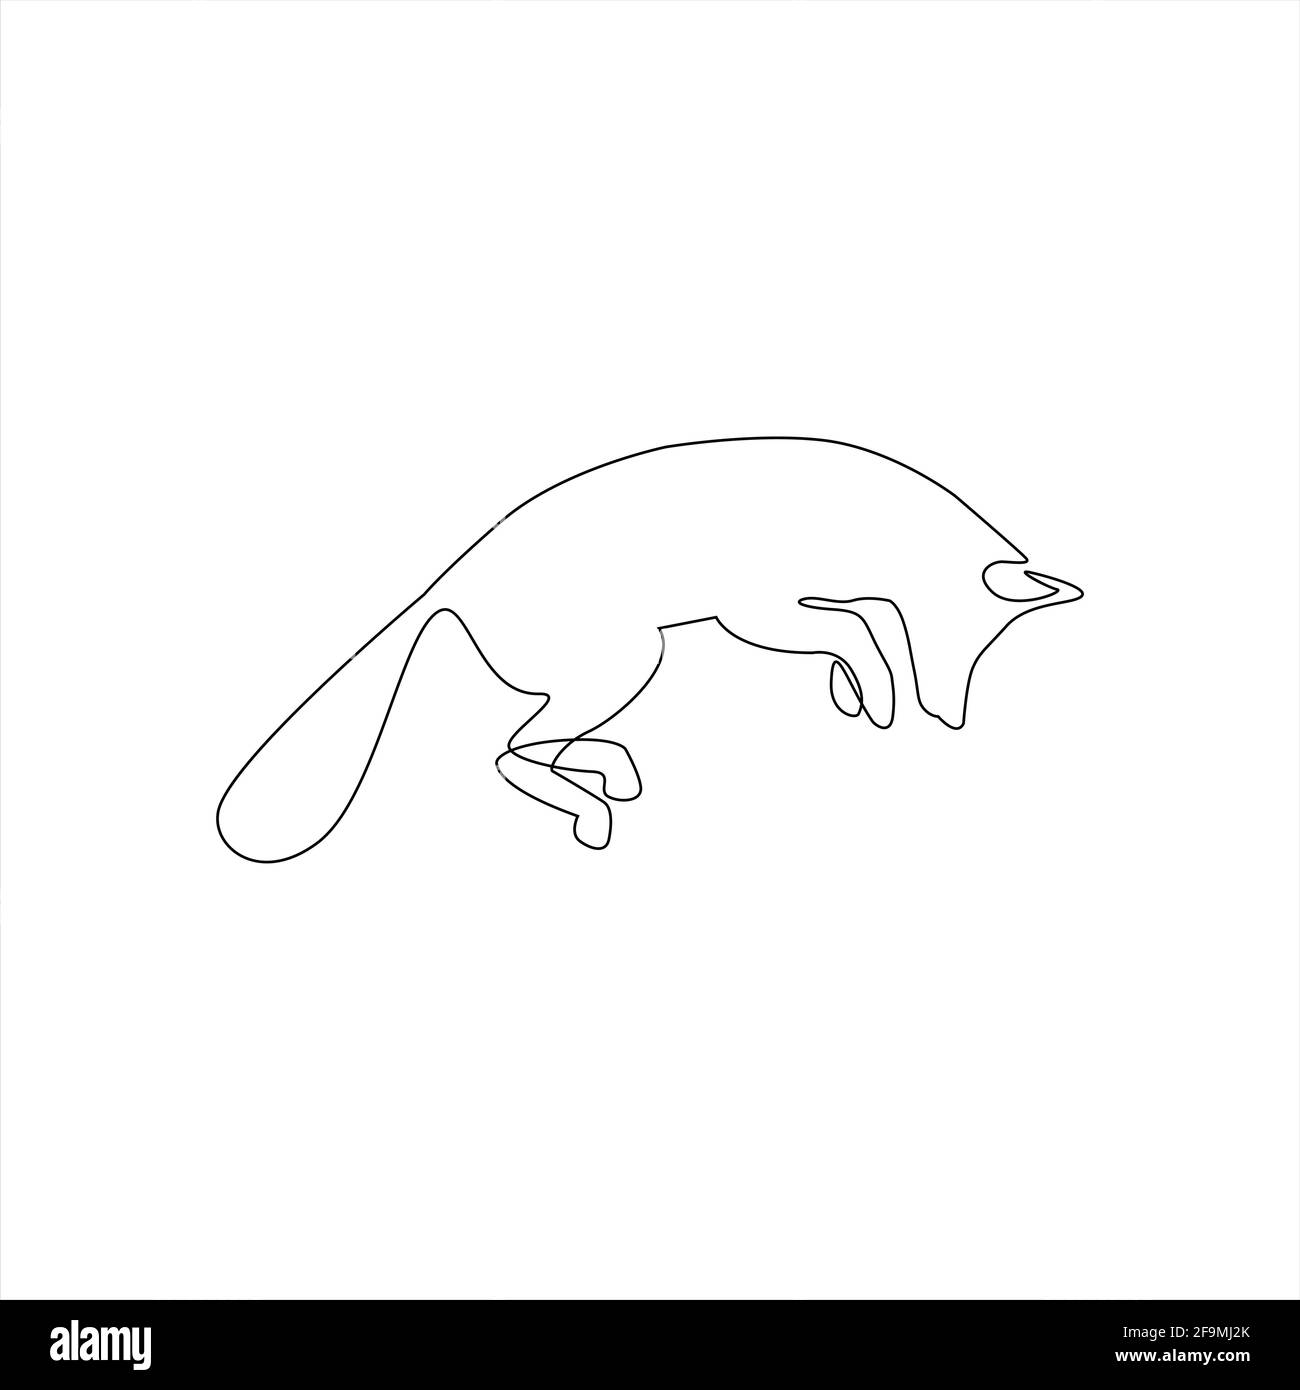 Minimalistisches One Line Fox-Symbol. Linie Zeichnung Tier Tattoo. Der Fuchs springt eine Linie Hand Zeichnung kontinuierlichen Kunstdruck, Vektor-Illustration. Freie s Stock Vektor